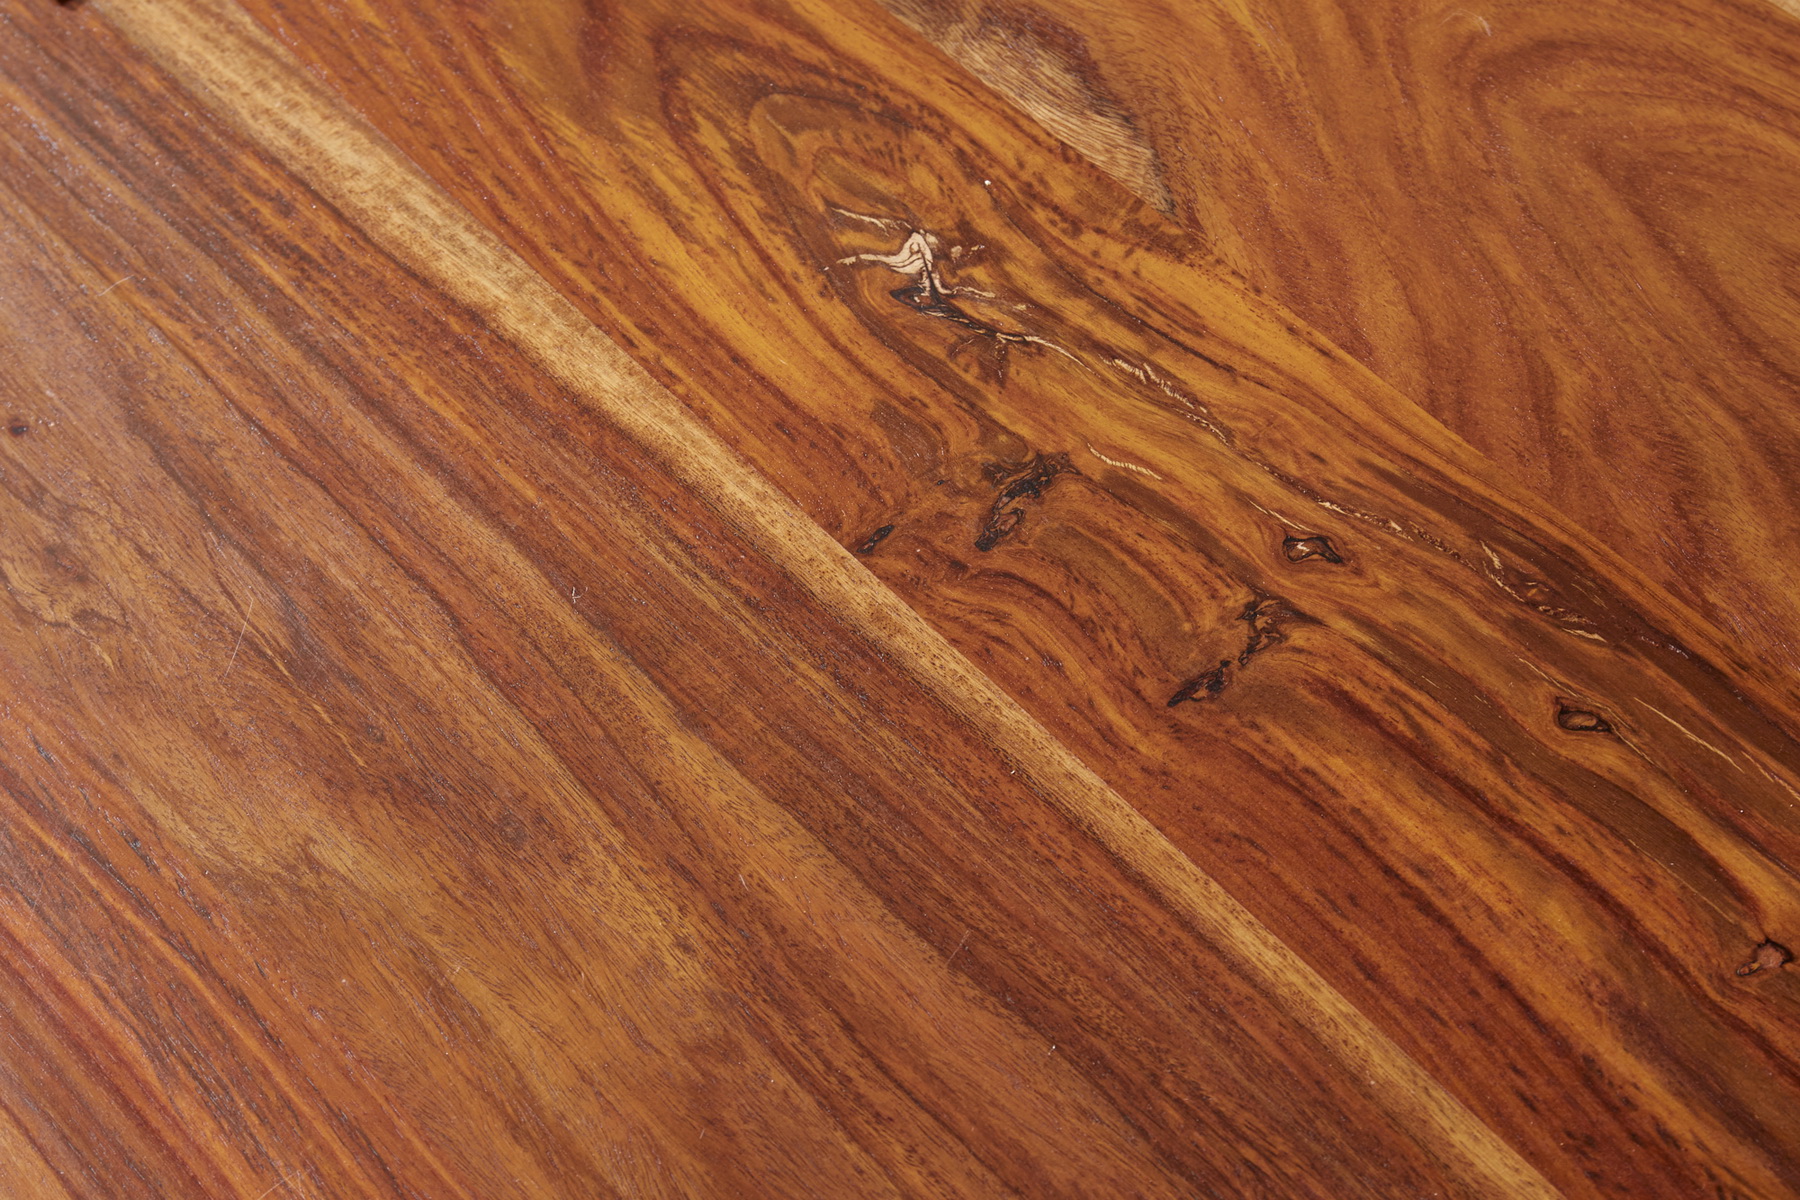 Jedálenský stôl 40191 220x100cm Masív drevo Palisander